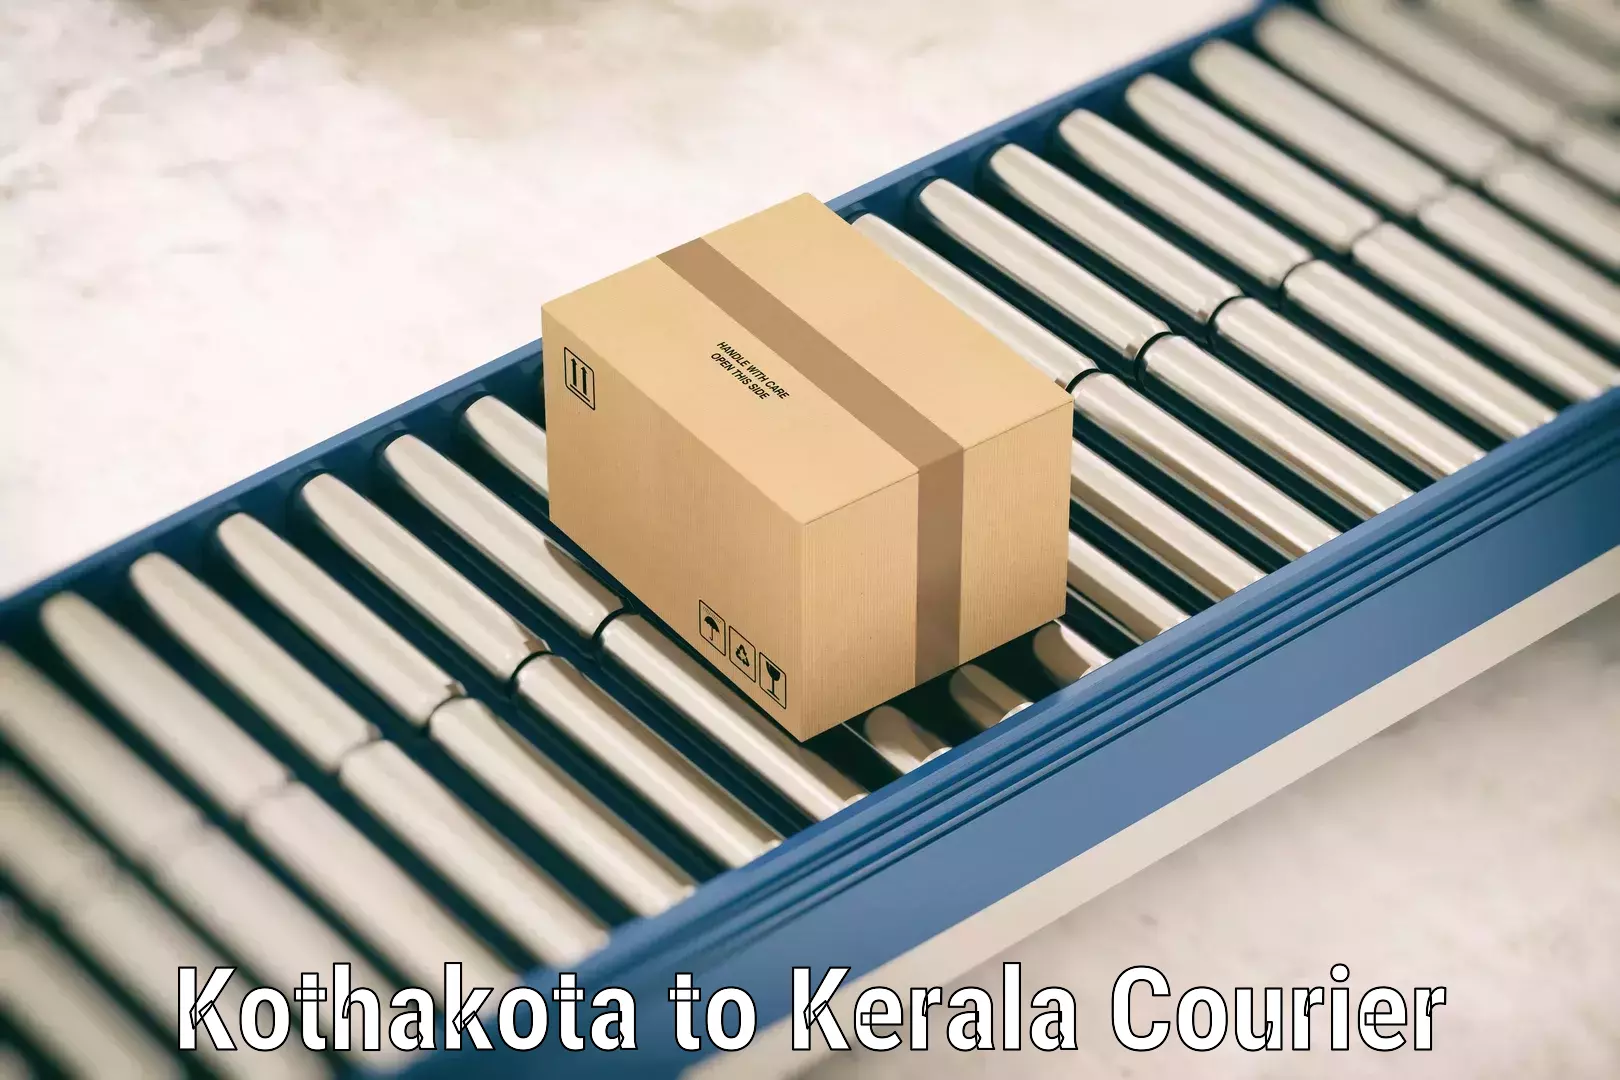 Baggage delivery management Kothakota to Perambra